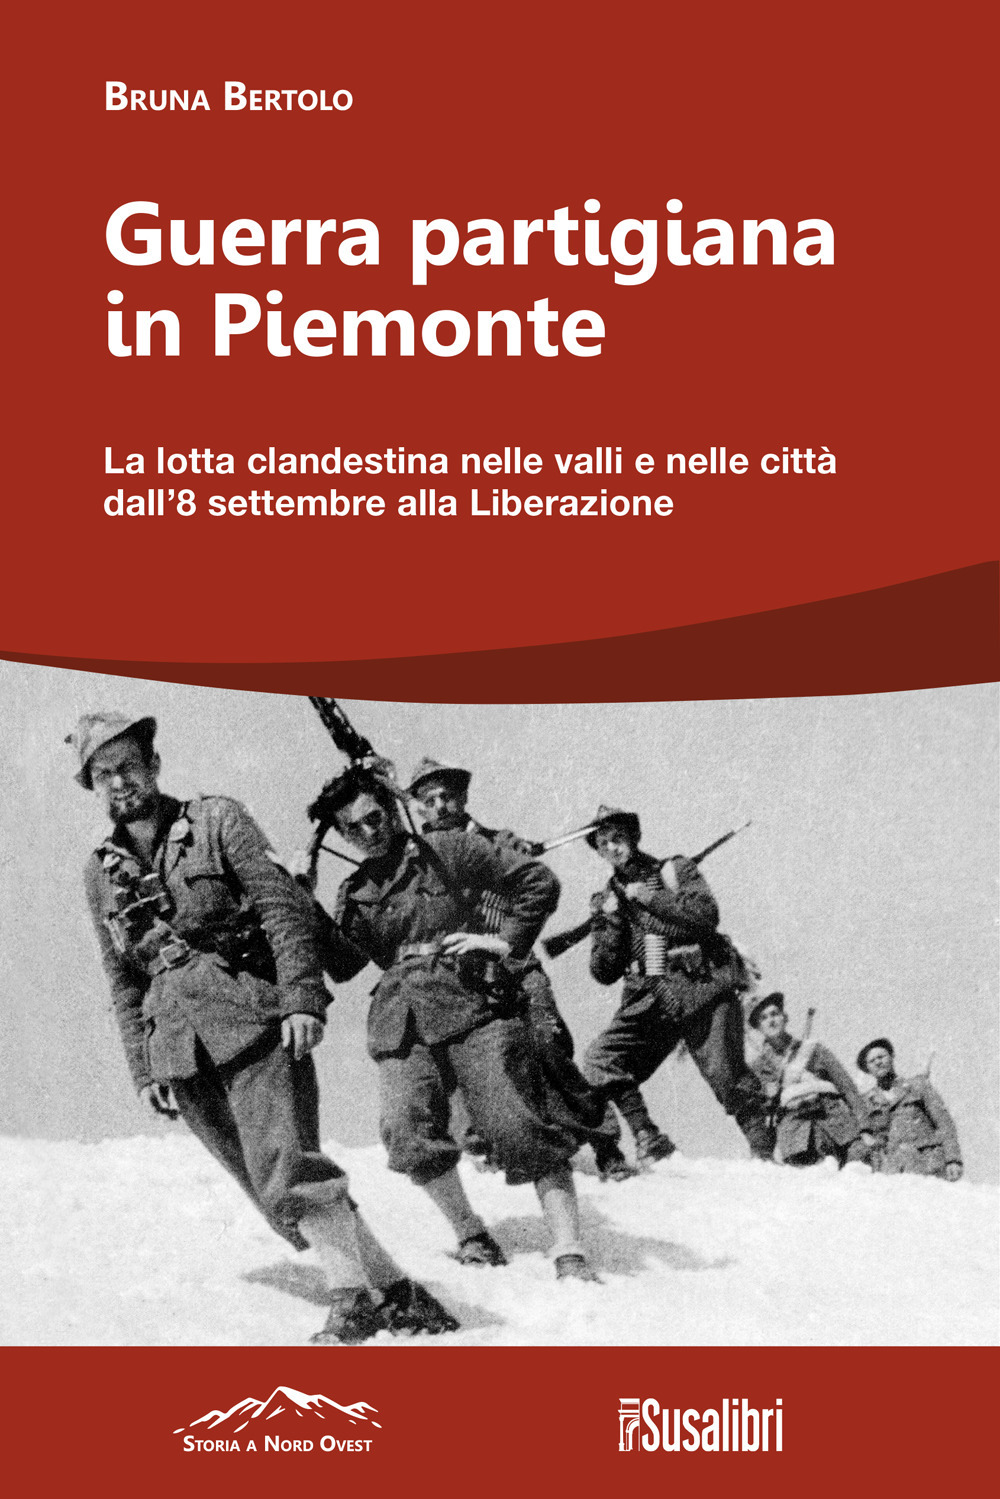 Guerra partigiana in Piemonte. La lotta clandestina nelle valli e nelle città dall'8 settembre alla Liberazione